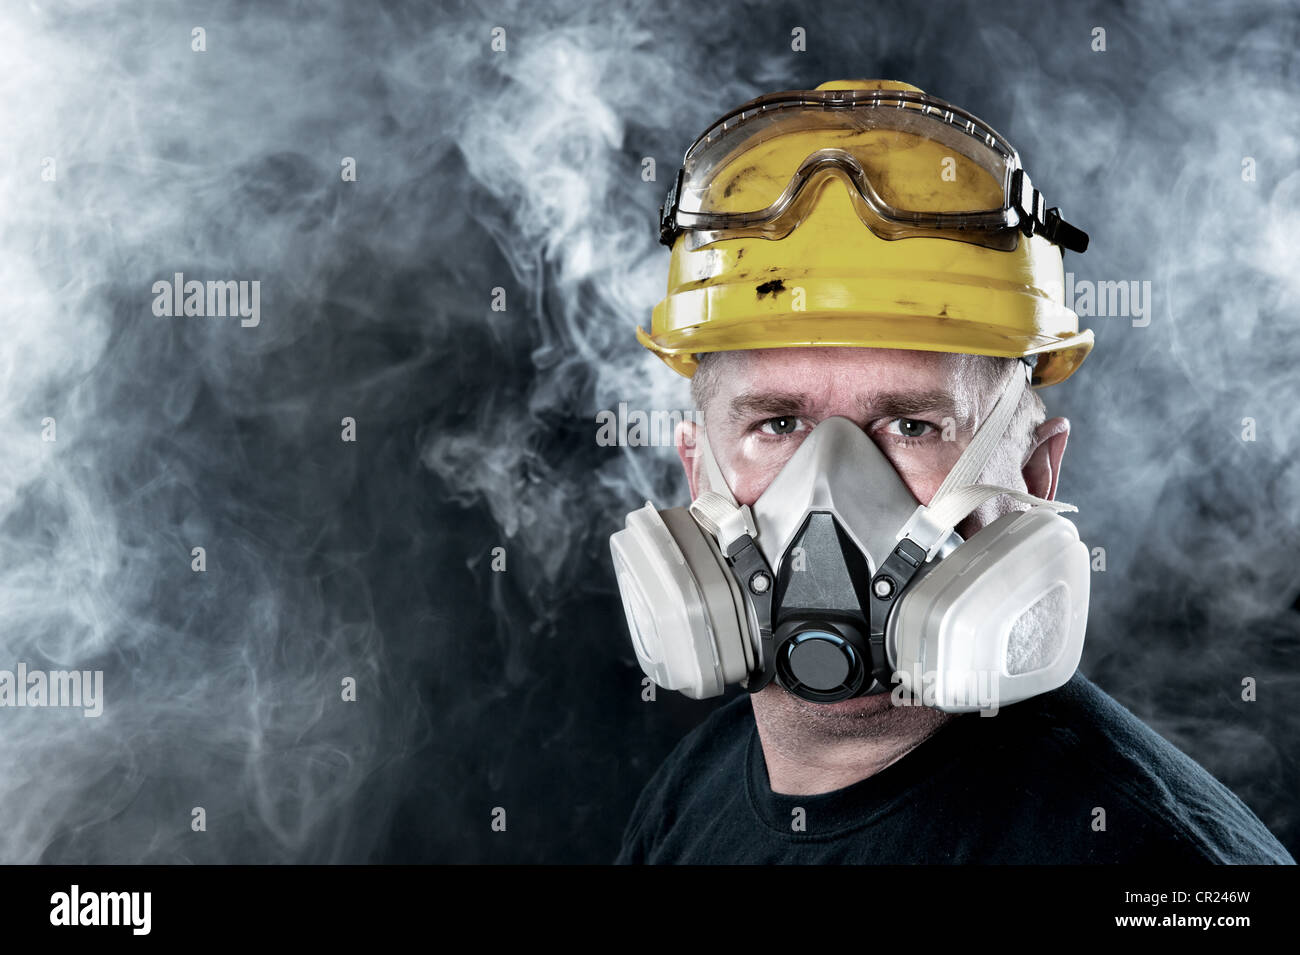 Un sauveteur porte un masque respiratoire dans une atmosphère toxique, fumée. Image montre l'importance de la protection et de la sécurité de l'état de préparation. Banque D'Images